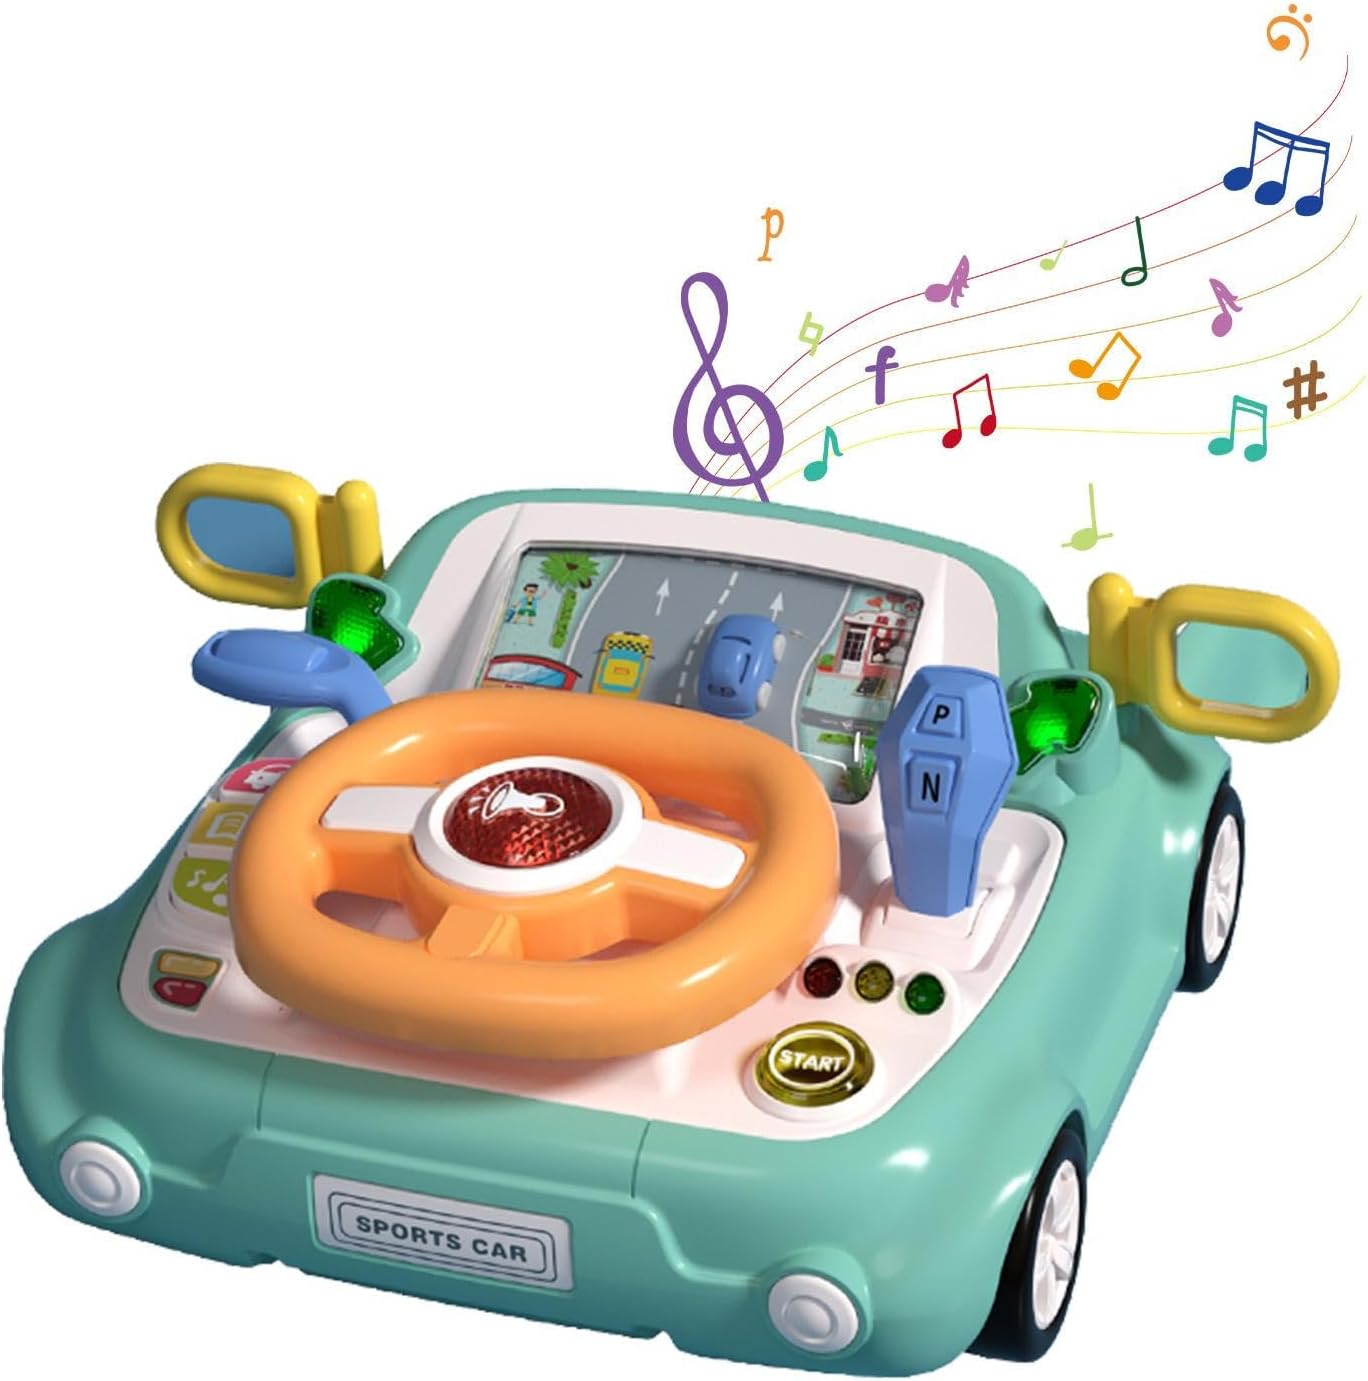 ?子供向けエンターテイメント: ステアリングホイールおもちゃは、子供たちが楽しむために特別に設計されたインタラクティブな音楽とボタンにより、子供たちに無限のエンターテイメントを提供します。鮮やかな色と遊び心のあるサウンドを備えたこのおもちゃは、子どもたちの創造性と想像力を刺激し、何時間も夢中にさせてくれます。 ?多機能デザイン：当社のおもちゃのステアリングホイールは、単なる遊びの楽しみ以上のものです。ハンドル、ホーン、ギアレバー、サウンドボタンなどの複数の機能を備えており、感覚を刺激しながら、お子様の探求、創造性、発達を促します。 ?丈夫な素材: この子供用ハンドルおもちゃは、想像力と創造性を刺激するように設計されています。安全で耐久性のある素材で作られており、頻繁な摩耗や損傷に耐えることができます。しっかりとした厚みがあるので、お手入れも簡単です。このハンドルおもちゃは素晴らしい贈り物です ?発達の成長：器用さ、調整力、集中力を向上させるのに最適なおもちゃである子供用ステアリングホイールおもちゃは、細かい運動能力と認知スキルを楽しく強化する方法です。おもちゃのハンドルで楽しく遊びながら、お子様の成長と発達を促します。 ?素晴らしいギフト: ハンドルおもちゃでお子様の想像力と協調性を高めます。男の子にも女の子にも最適なこのギフトは、認知能力と運動能力を向上させるように設計されています。クリスマス、子供の日、誕生日など、当社のハンドルおもちゃはお子様の遊びの時間に興奮と発展をもたらします。